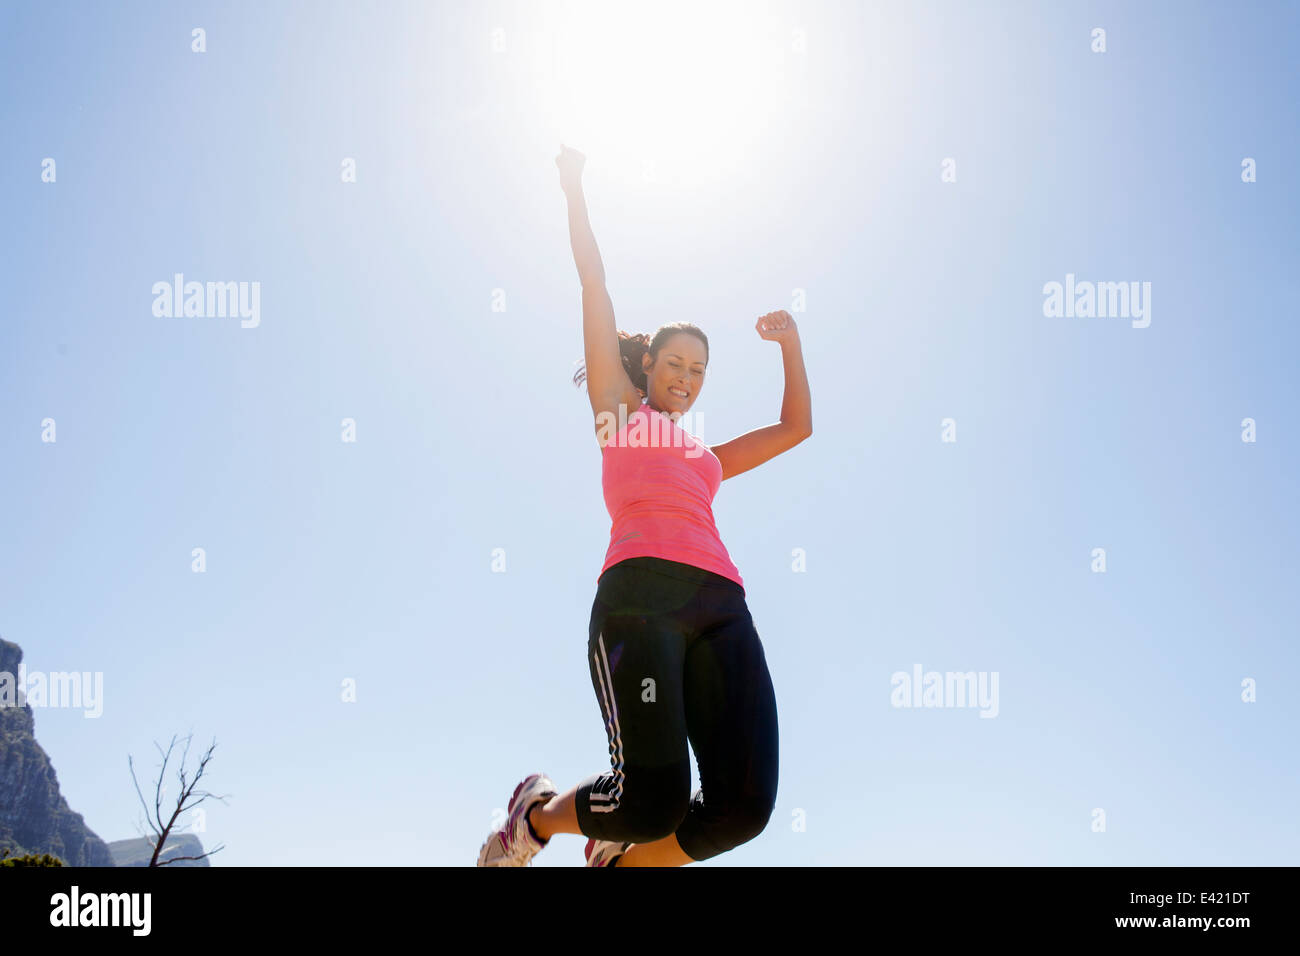 Weibliche Jogger springen in der Luft Stockfoto